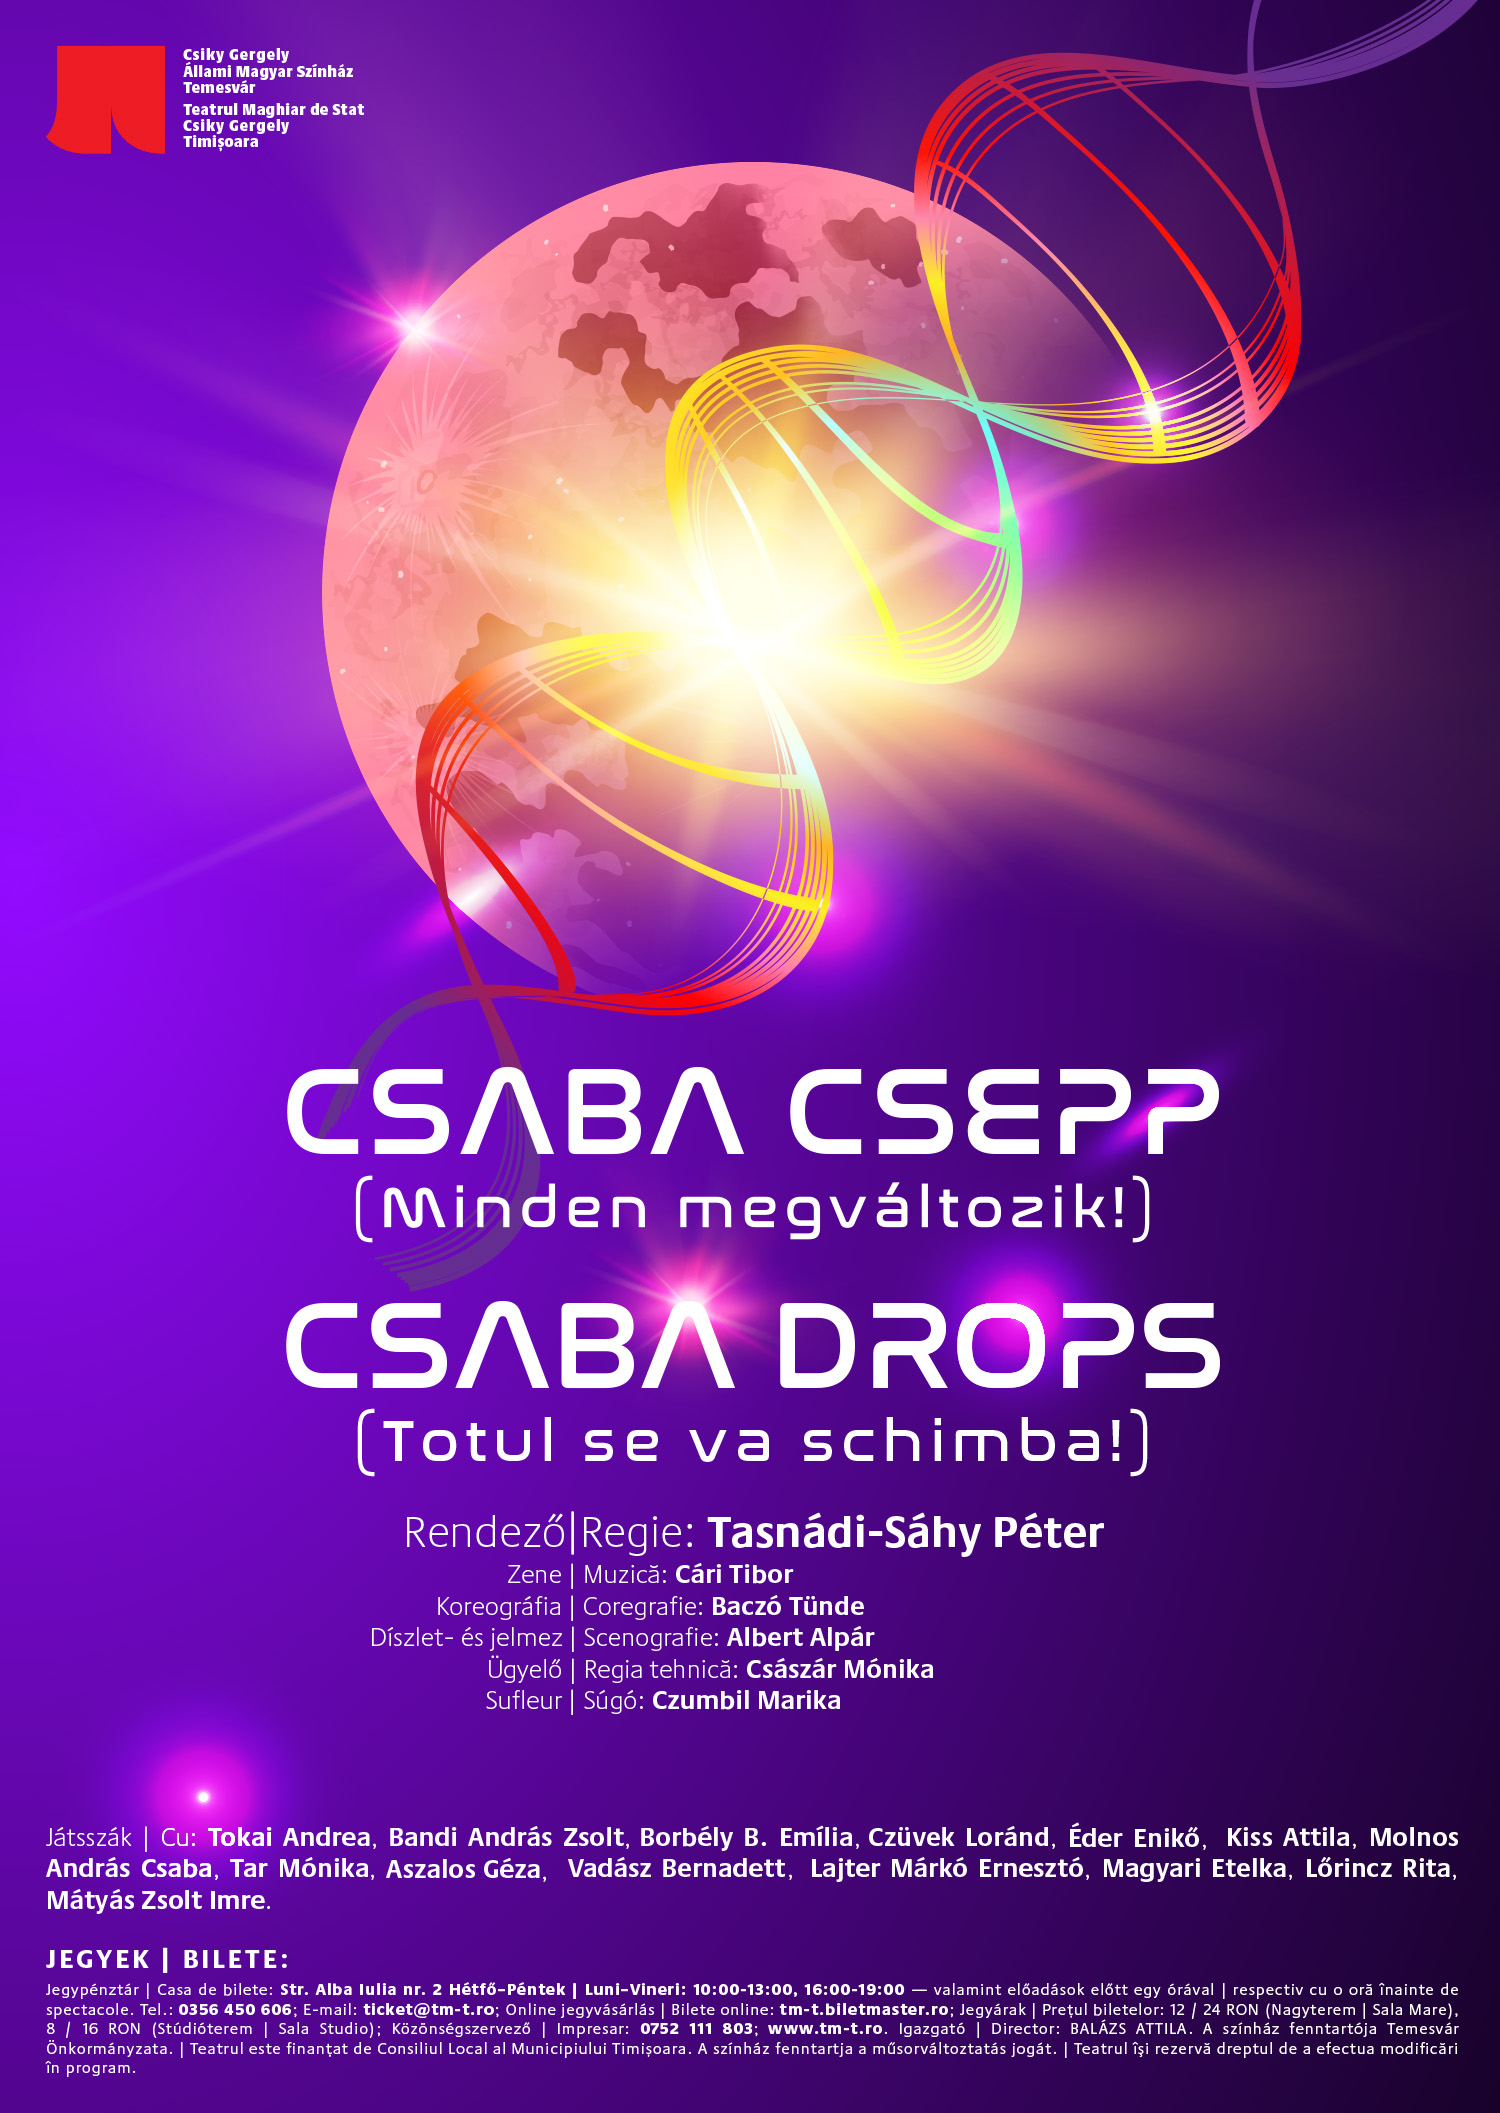 Csaba Drops (Totul se va schimba) este reprogramată pentru data de 27 ianuarie 2022, la ora 19.